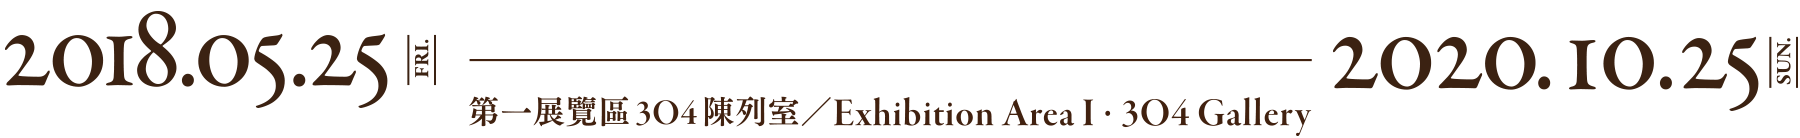 天香茄楠—香玩文化特展，展出時間 2018年05月25日至2020年10月25日，北部院區 第一展覽區 304